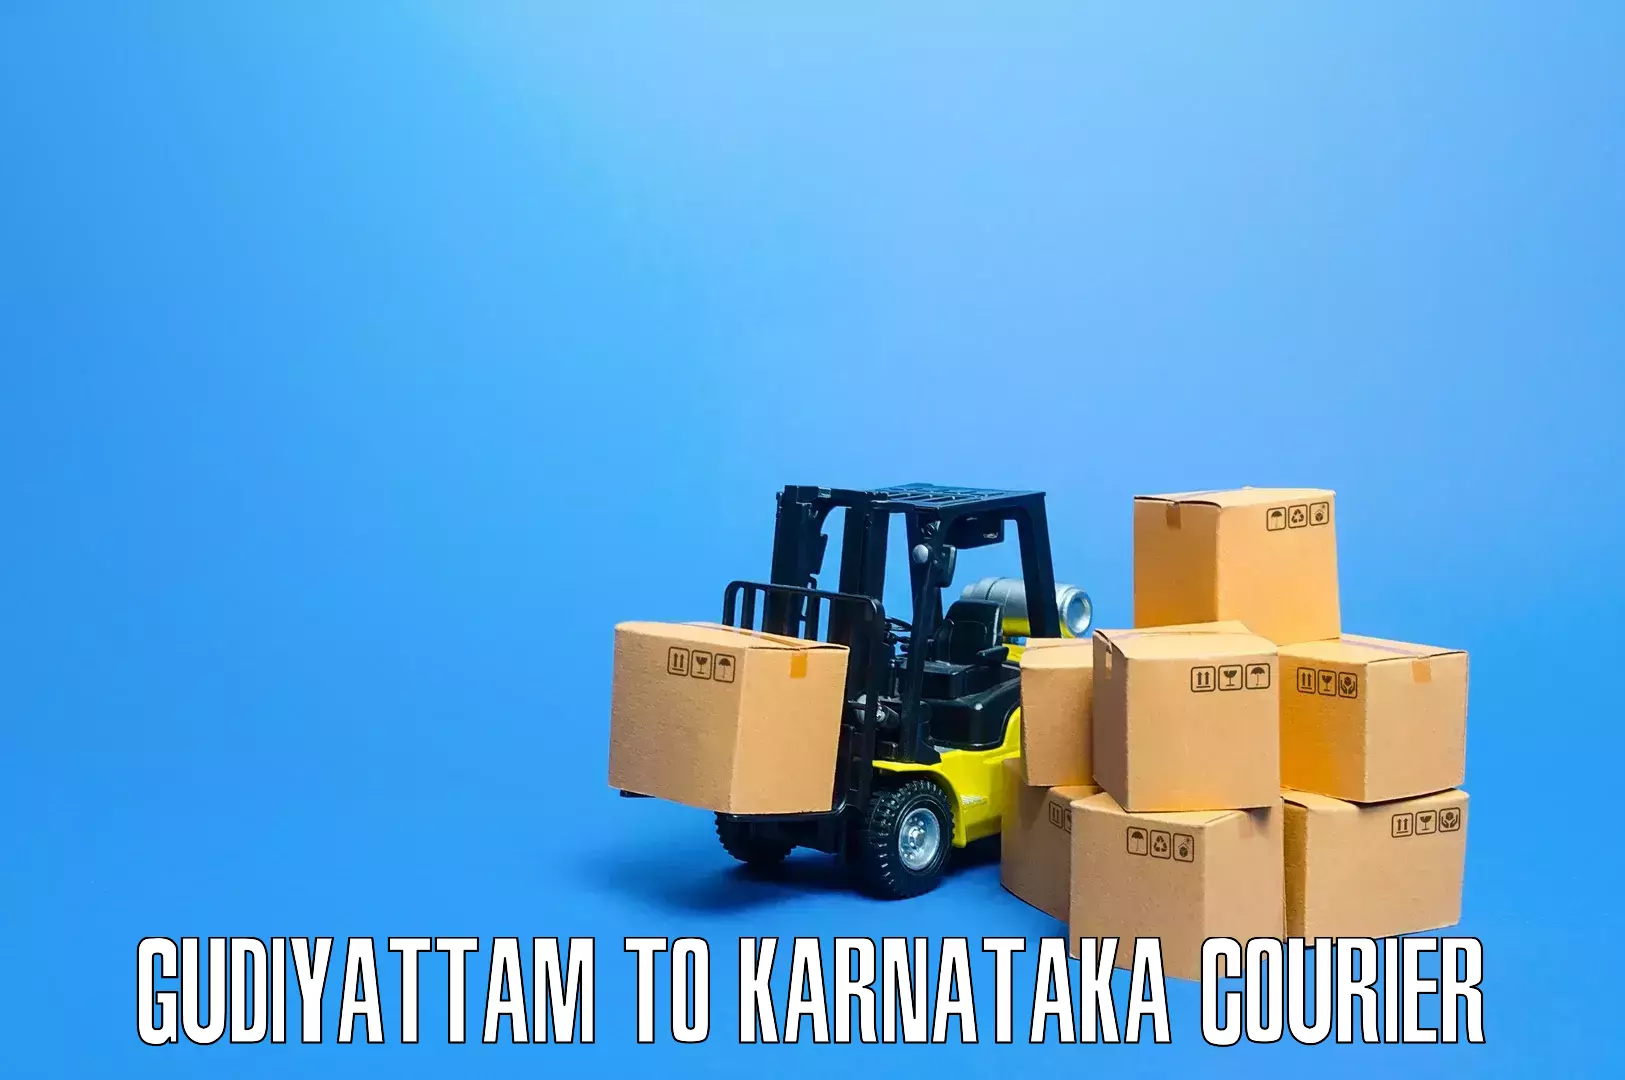 Professional furniture moving Gudiyattam to Yaragatti